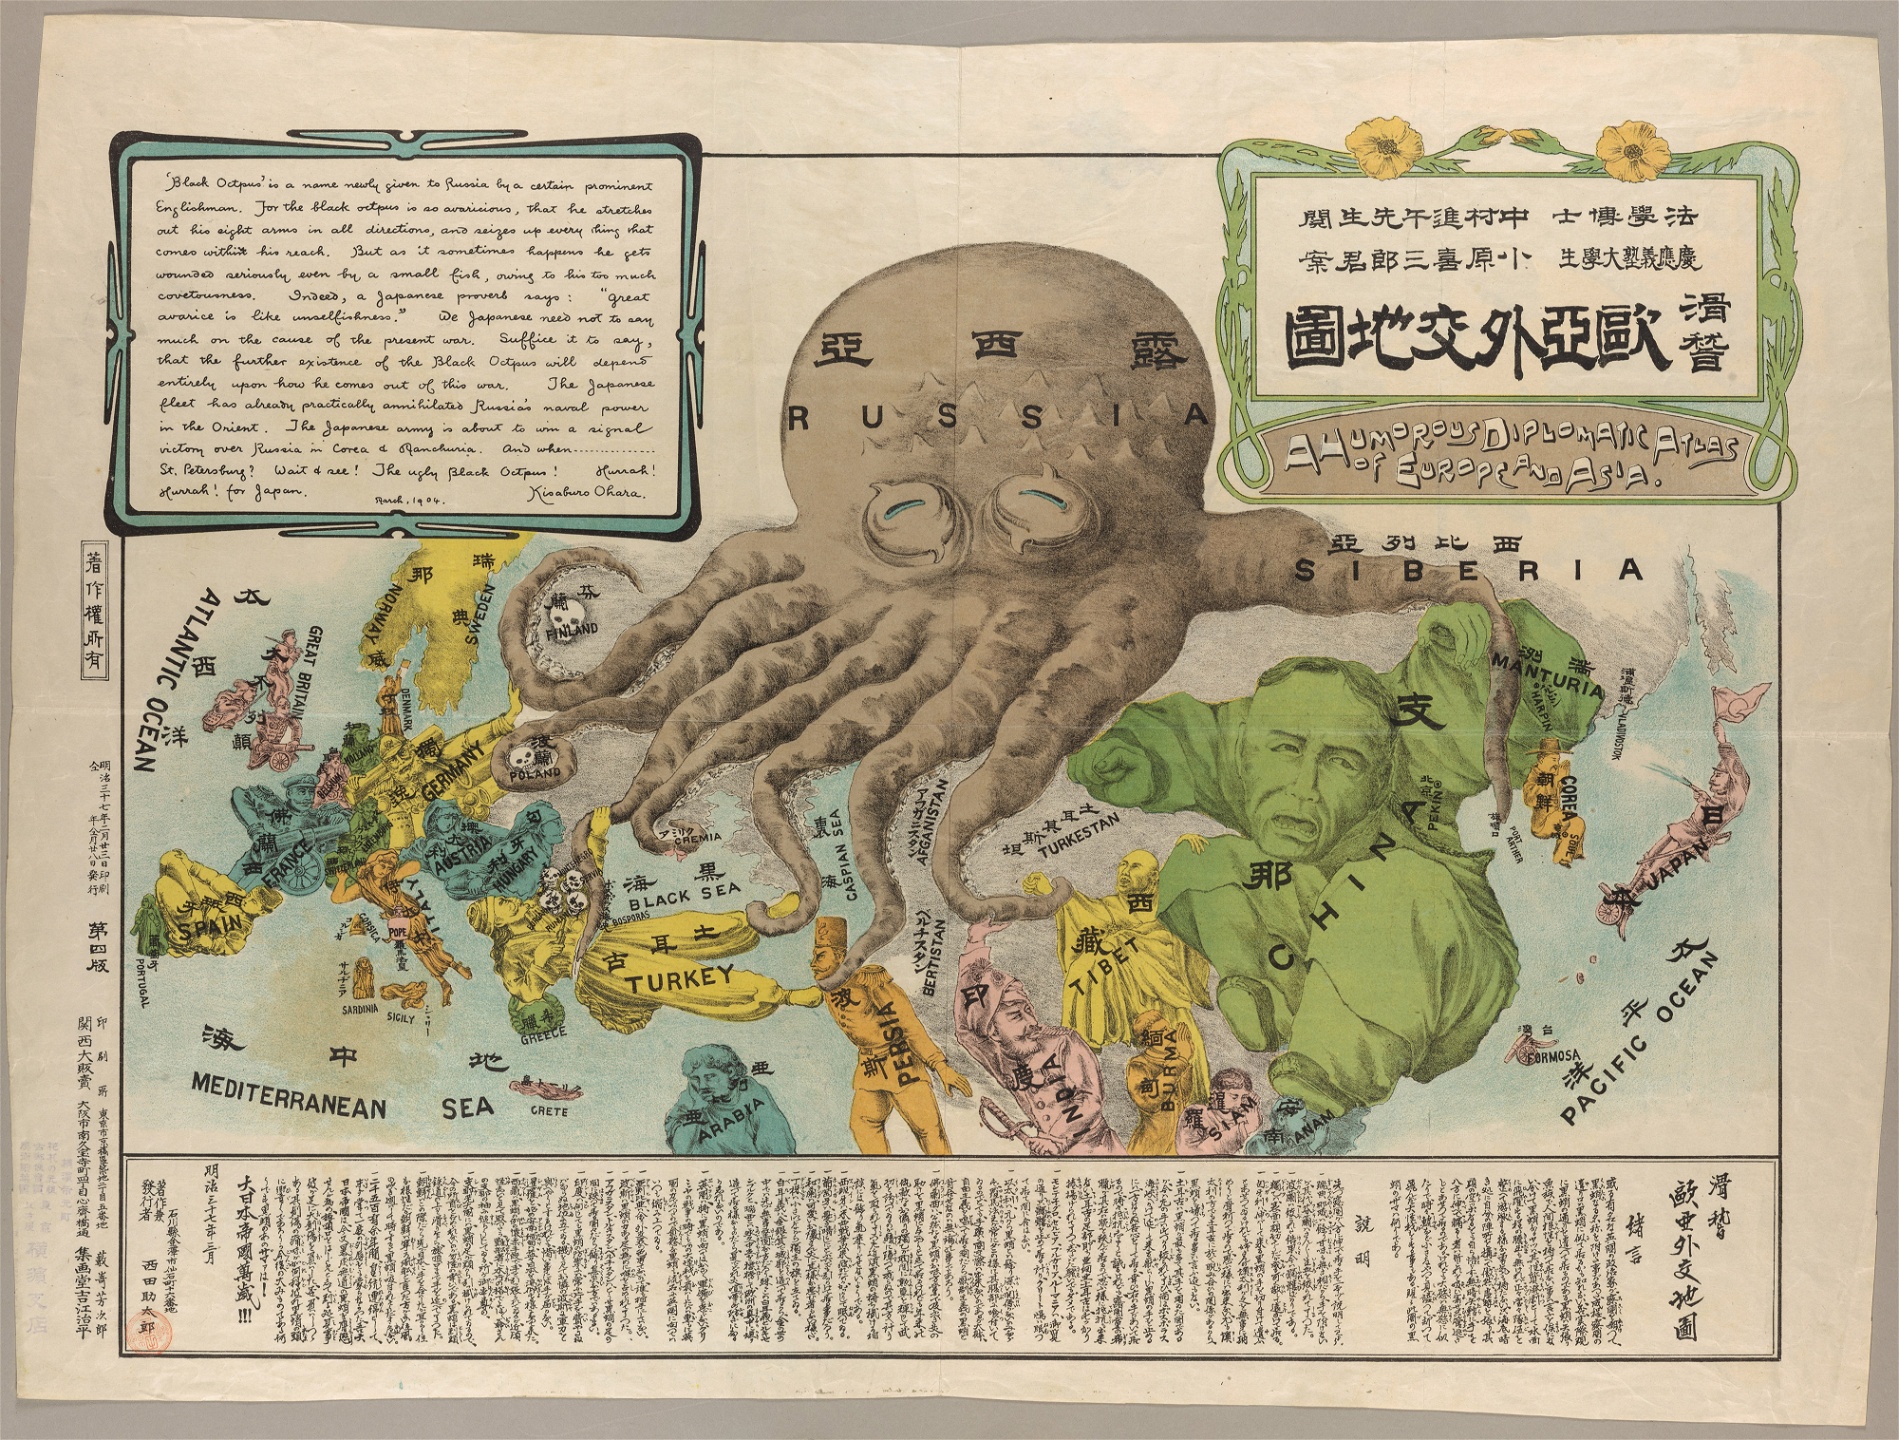 Det rysk-japanska kriget satte igång en rad processer som skulle påverka hela världen. Antirysk satirisk karta gjord av en japansk student under kriget.